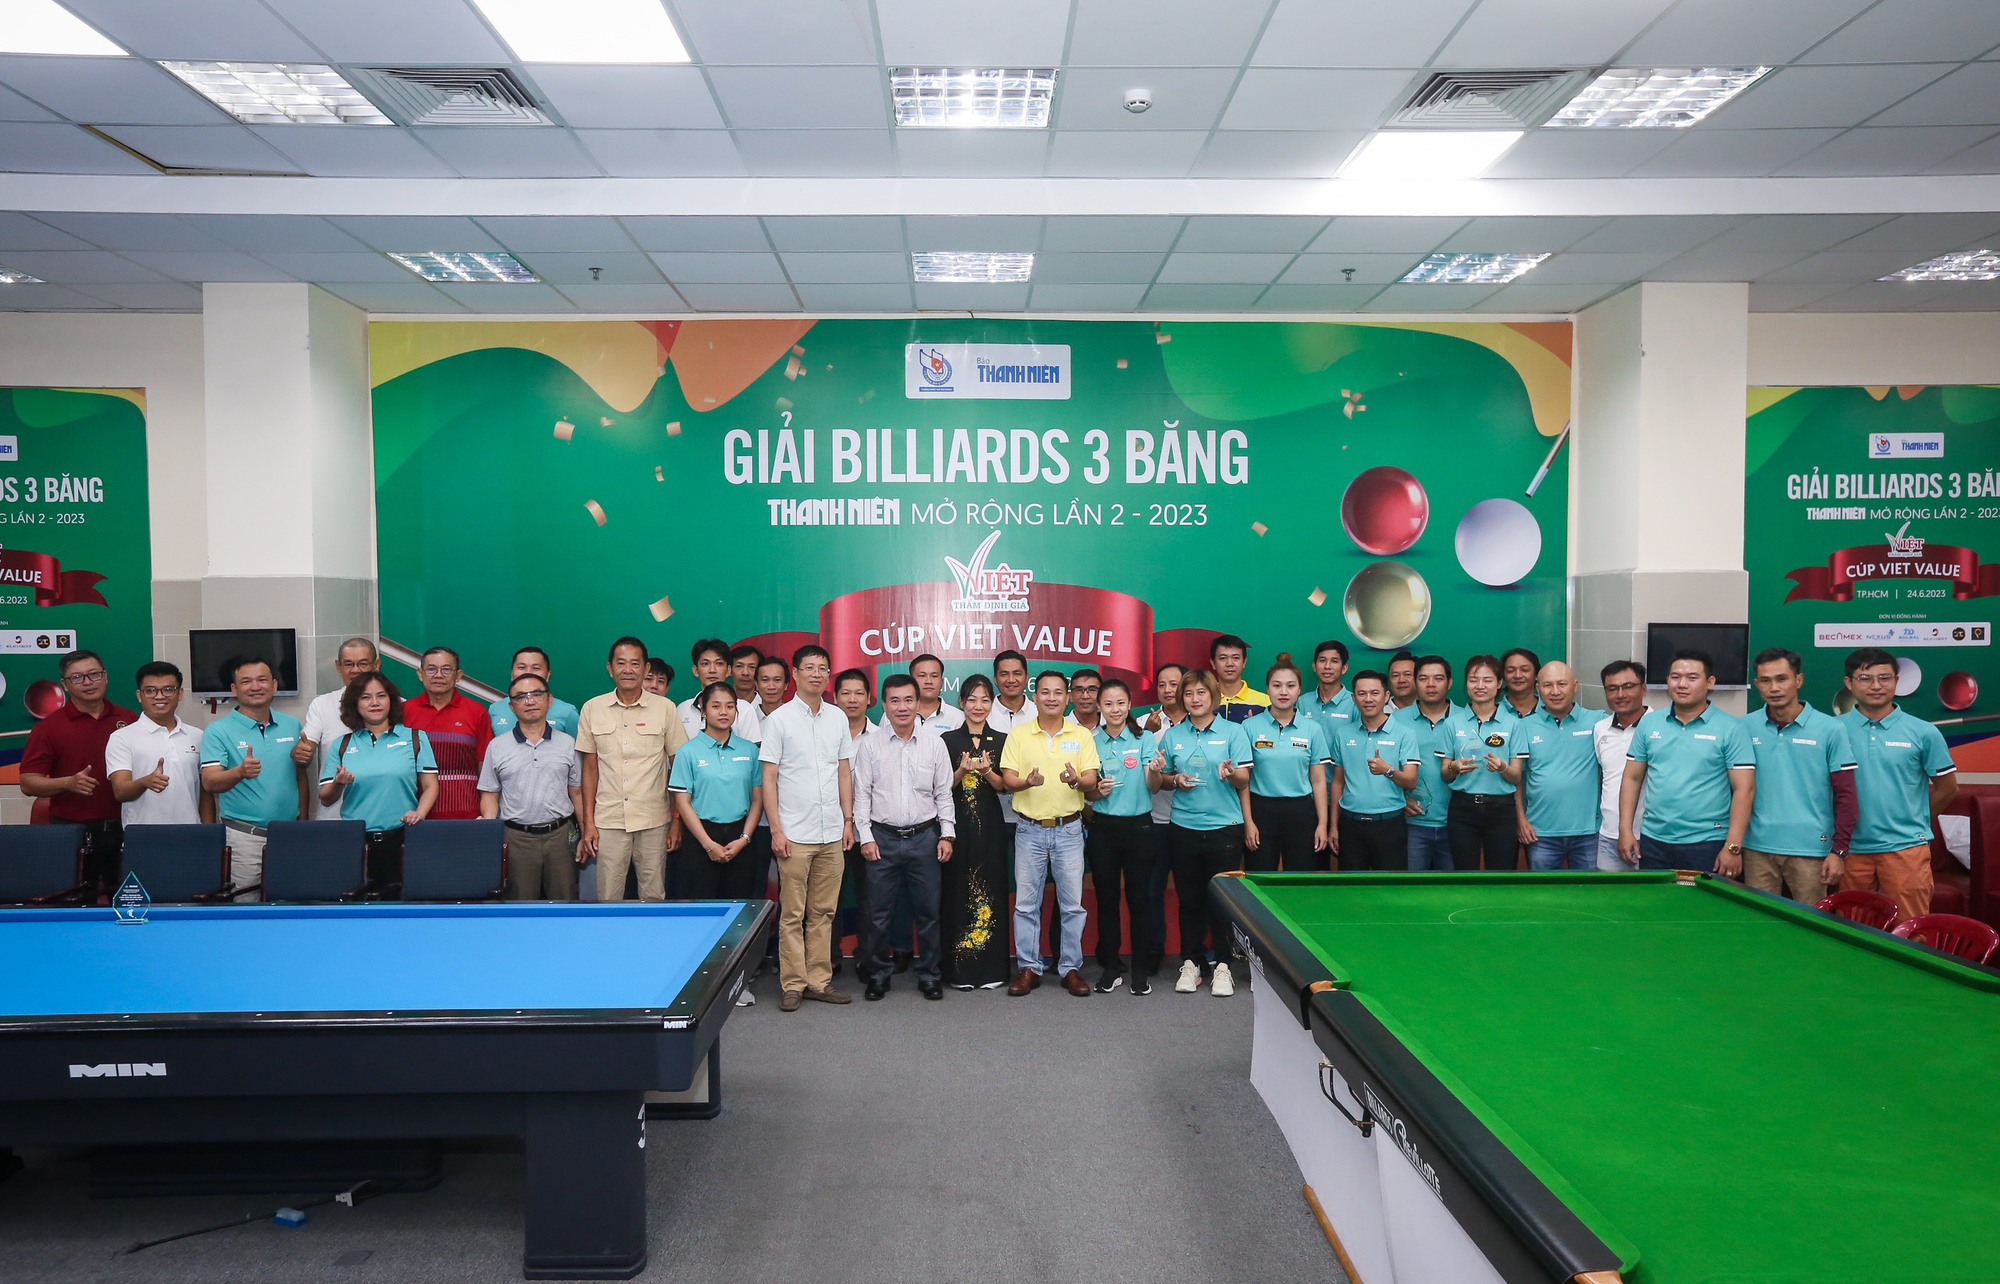 Nguyễn Hoàng Yến Nhi hứa hẹn bùng nổ tại giải billiards  3 băng Thanh Niên - Ảnh 1.